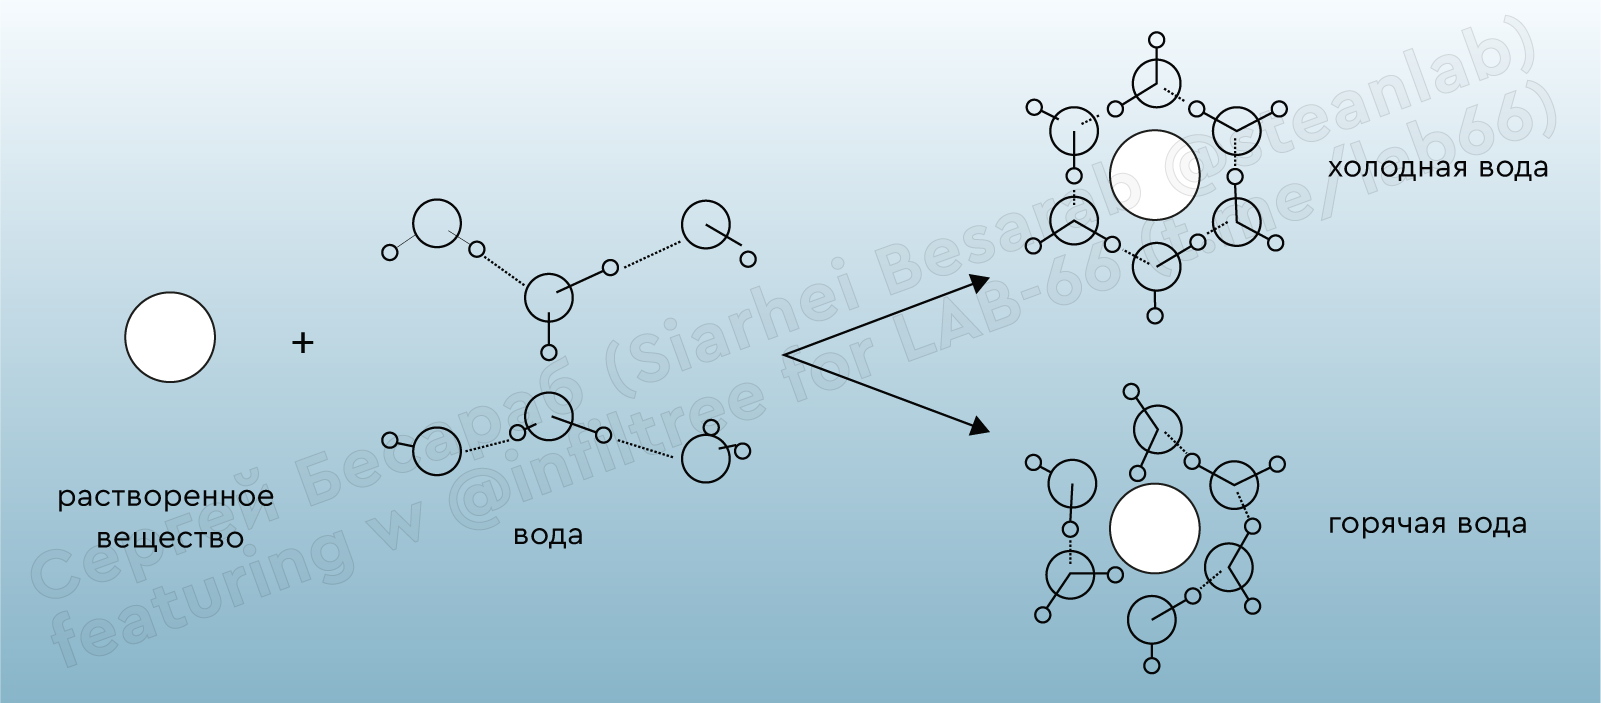 Гидратная оболочка белковой молекулы. Структурная схема молекулы воды. Схема гидратной оболочки белковой молекулы. Водные оболочки вокруг макромолекул.